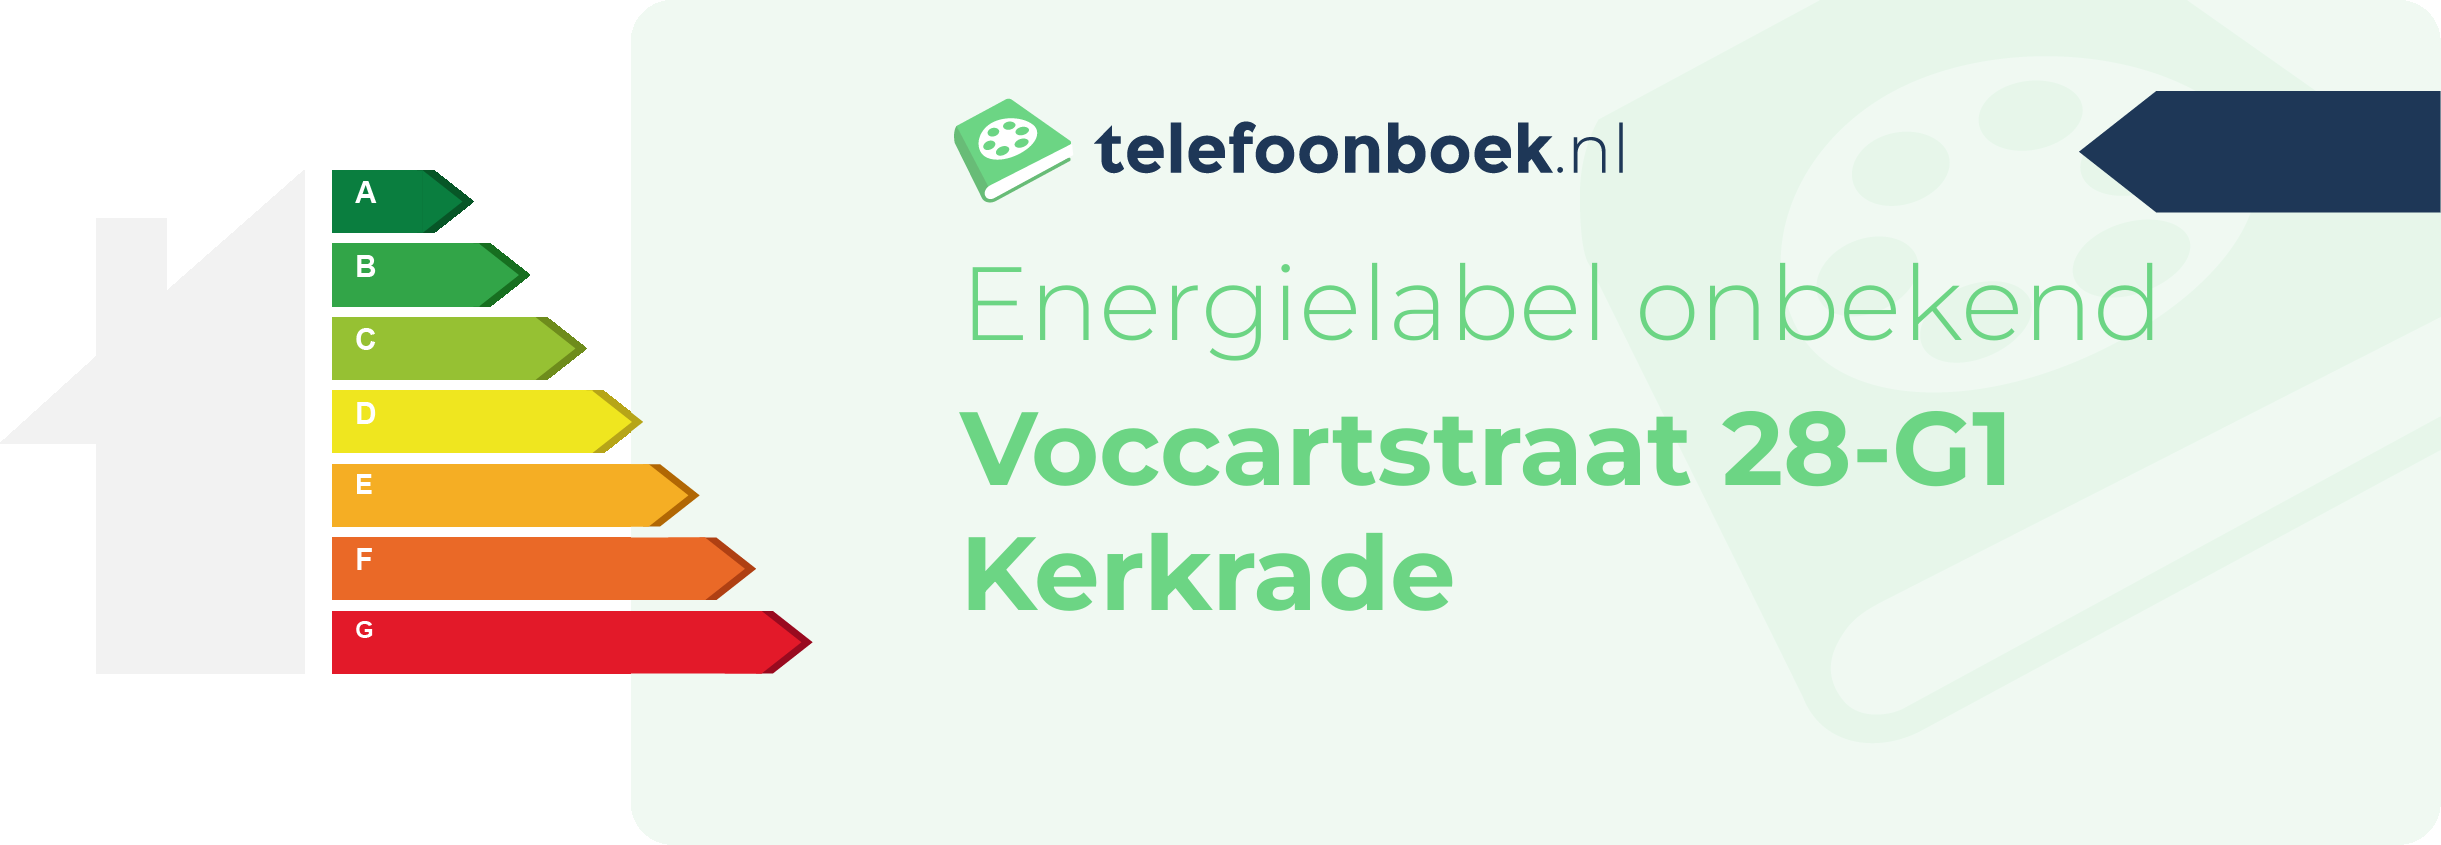 Energielabel Voccartstraat 28-G1 Kerkrade